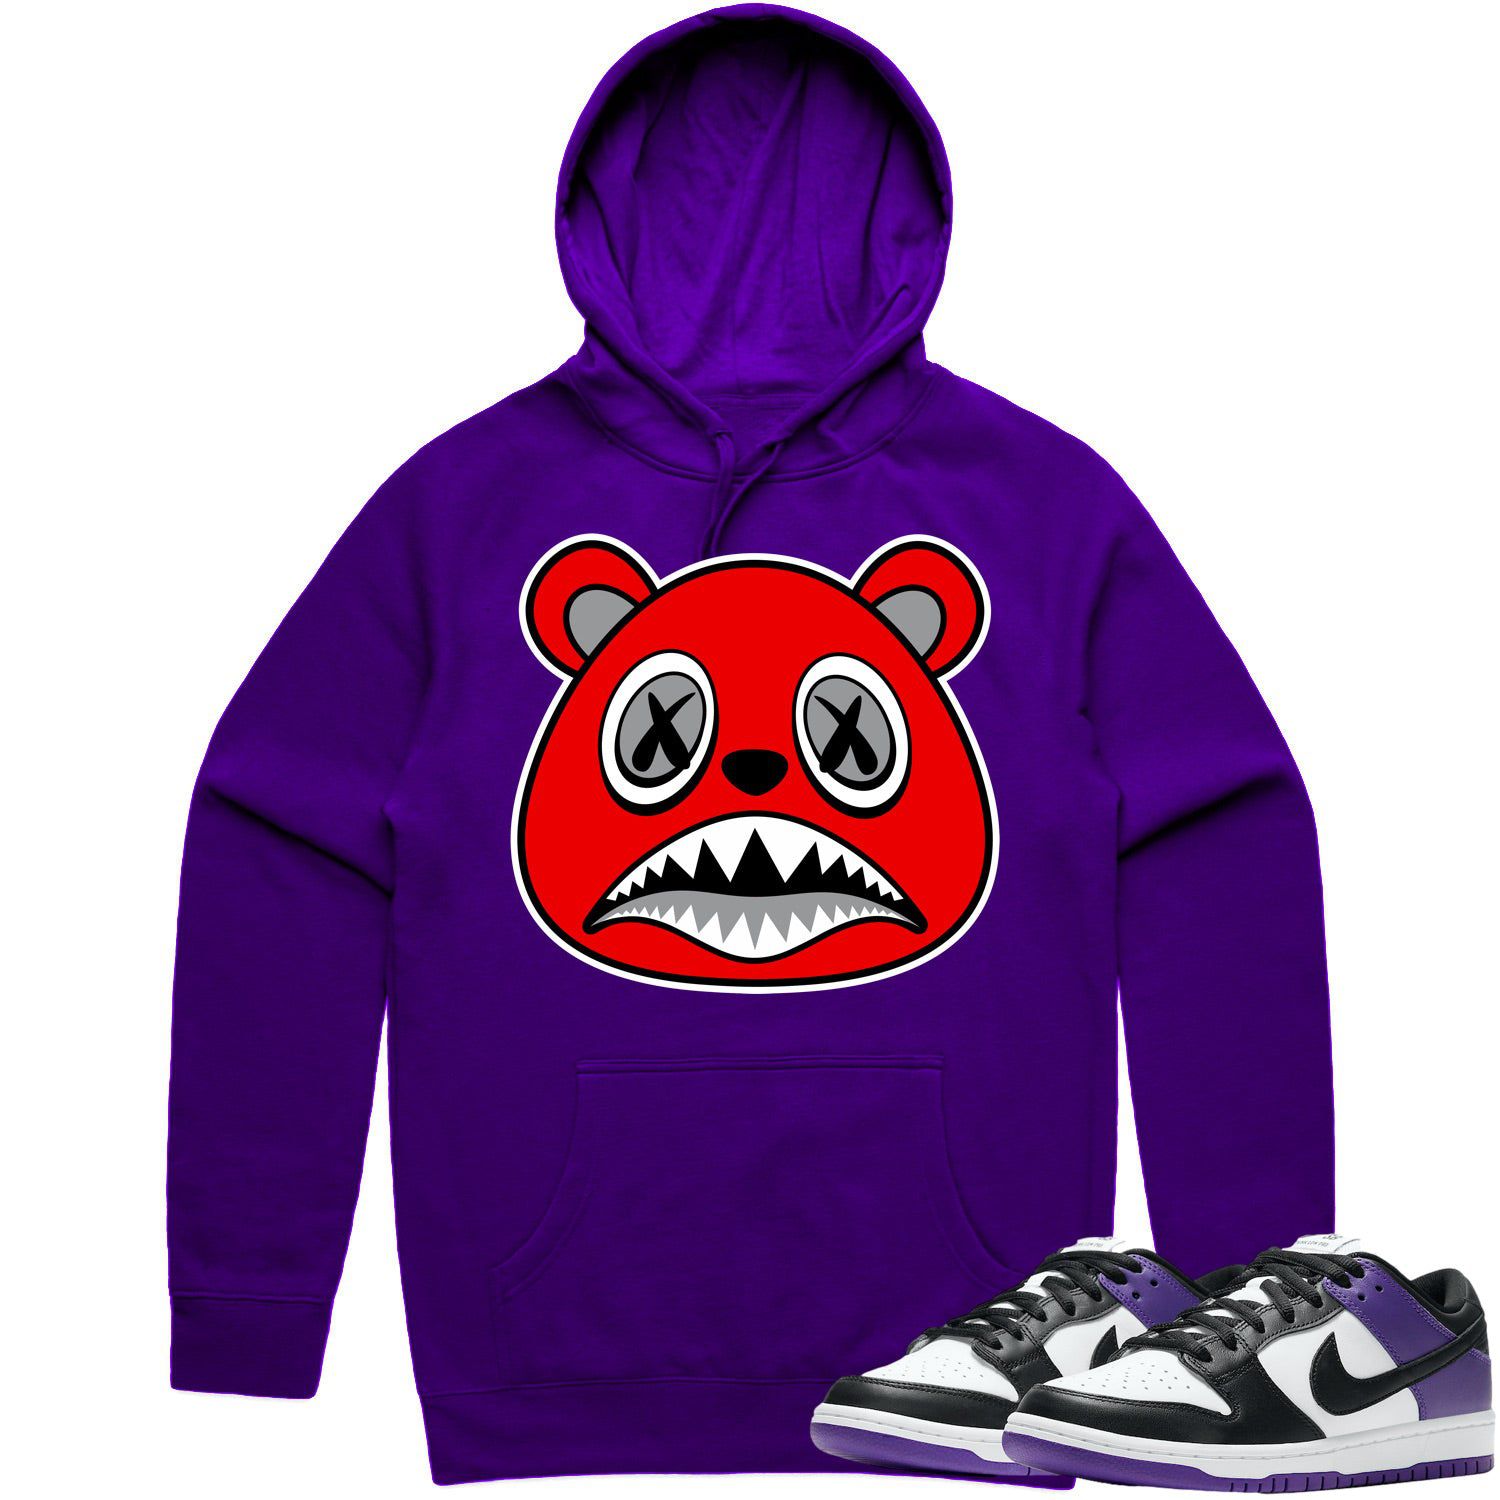 Court Purple Dunks Hoodie - Dunks Hoodies - Angry Baws Bear